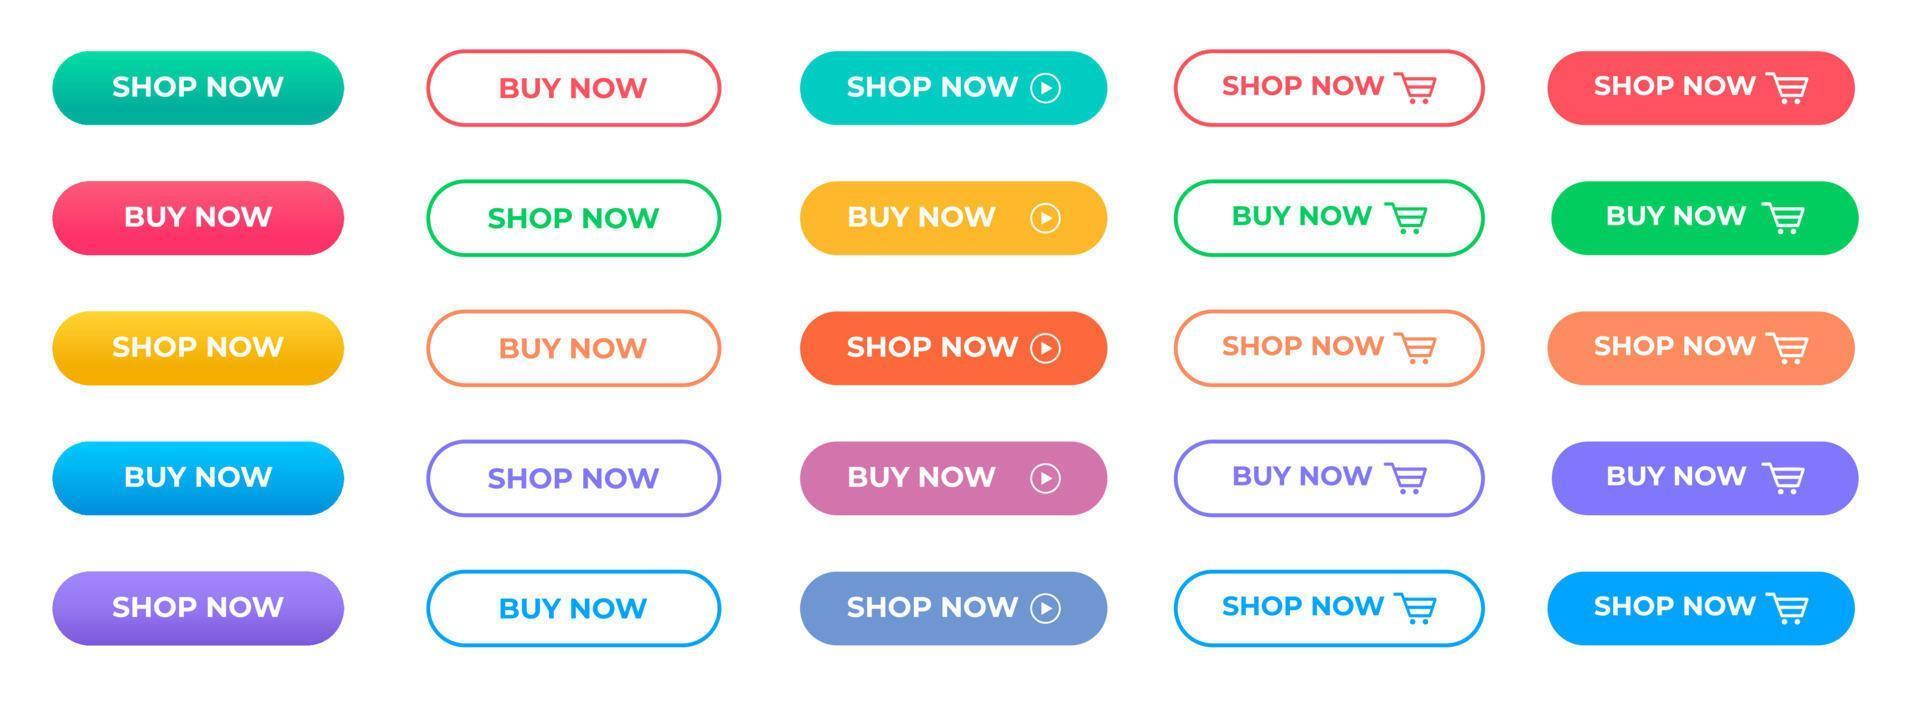 comprar ahora o tienda ahora botón modelo conjunto con multi color. vector